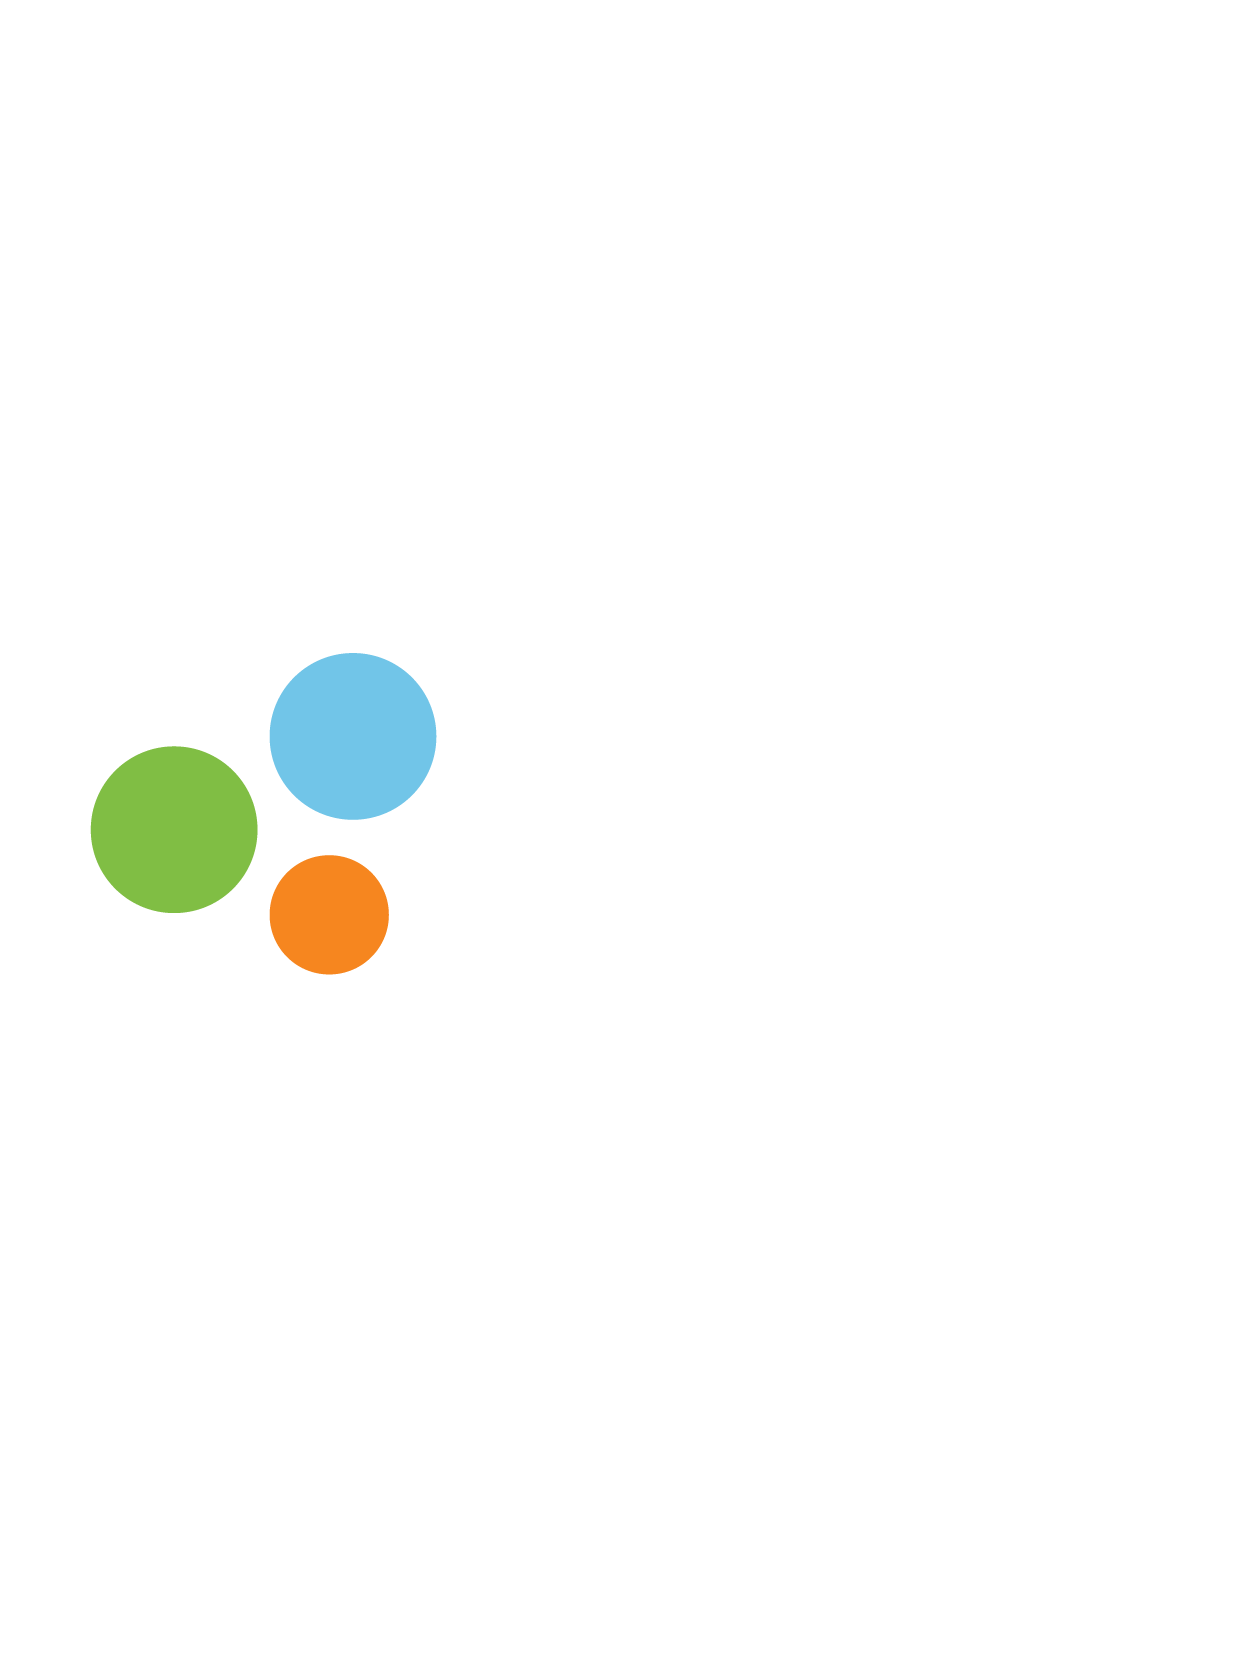 Mara_Assets-02-1